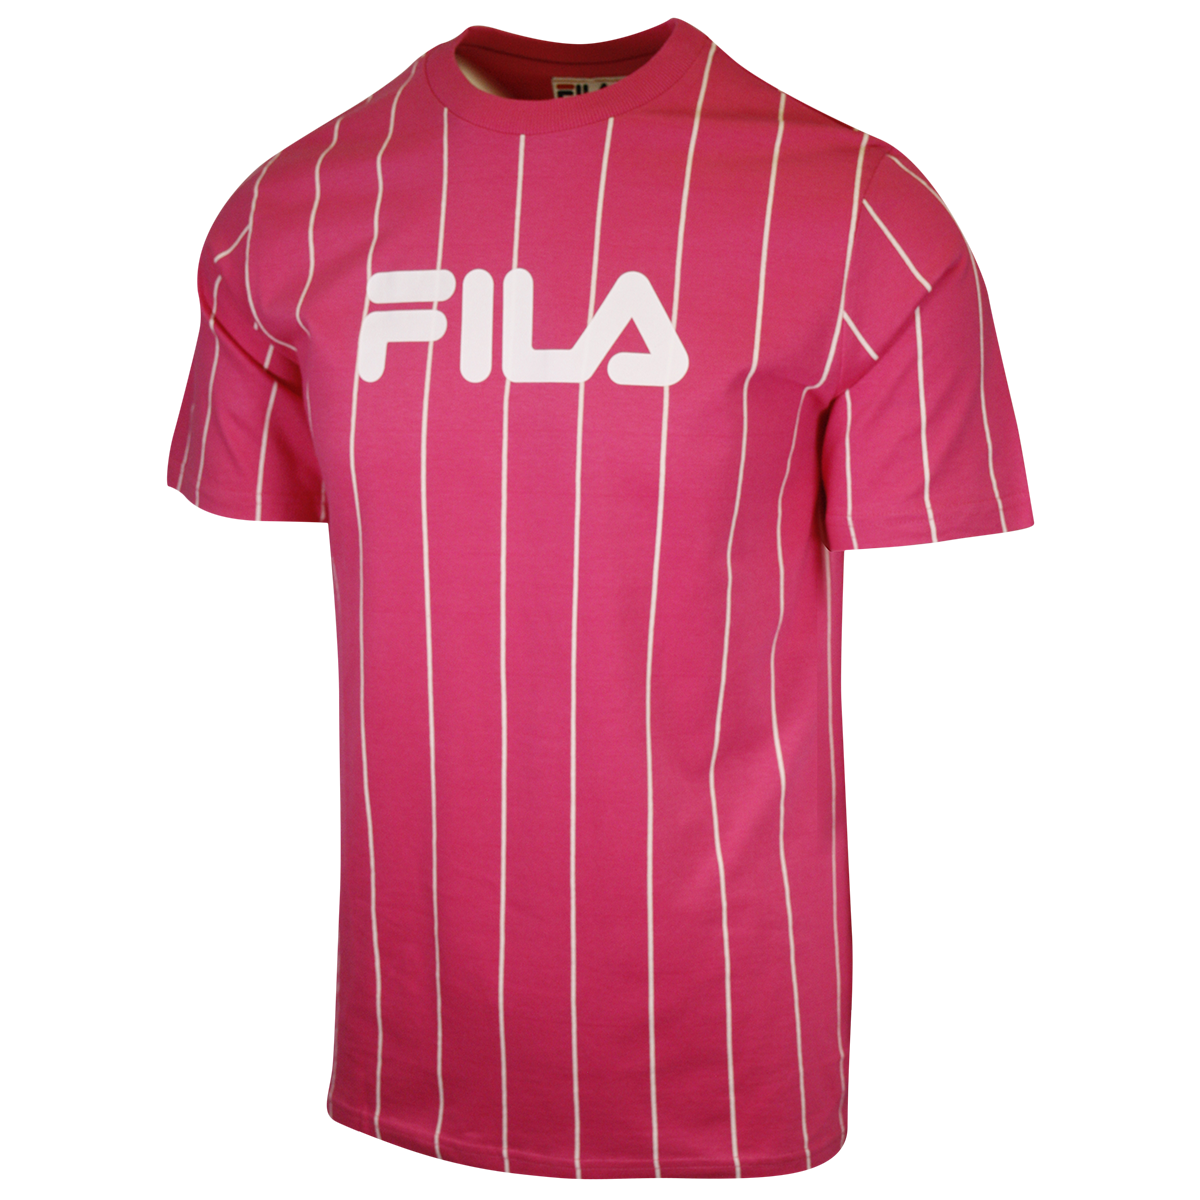 FILA Women's Pink & White Striped Logo S/S T-Shirt (163)